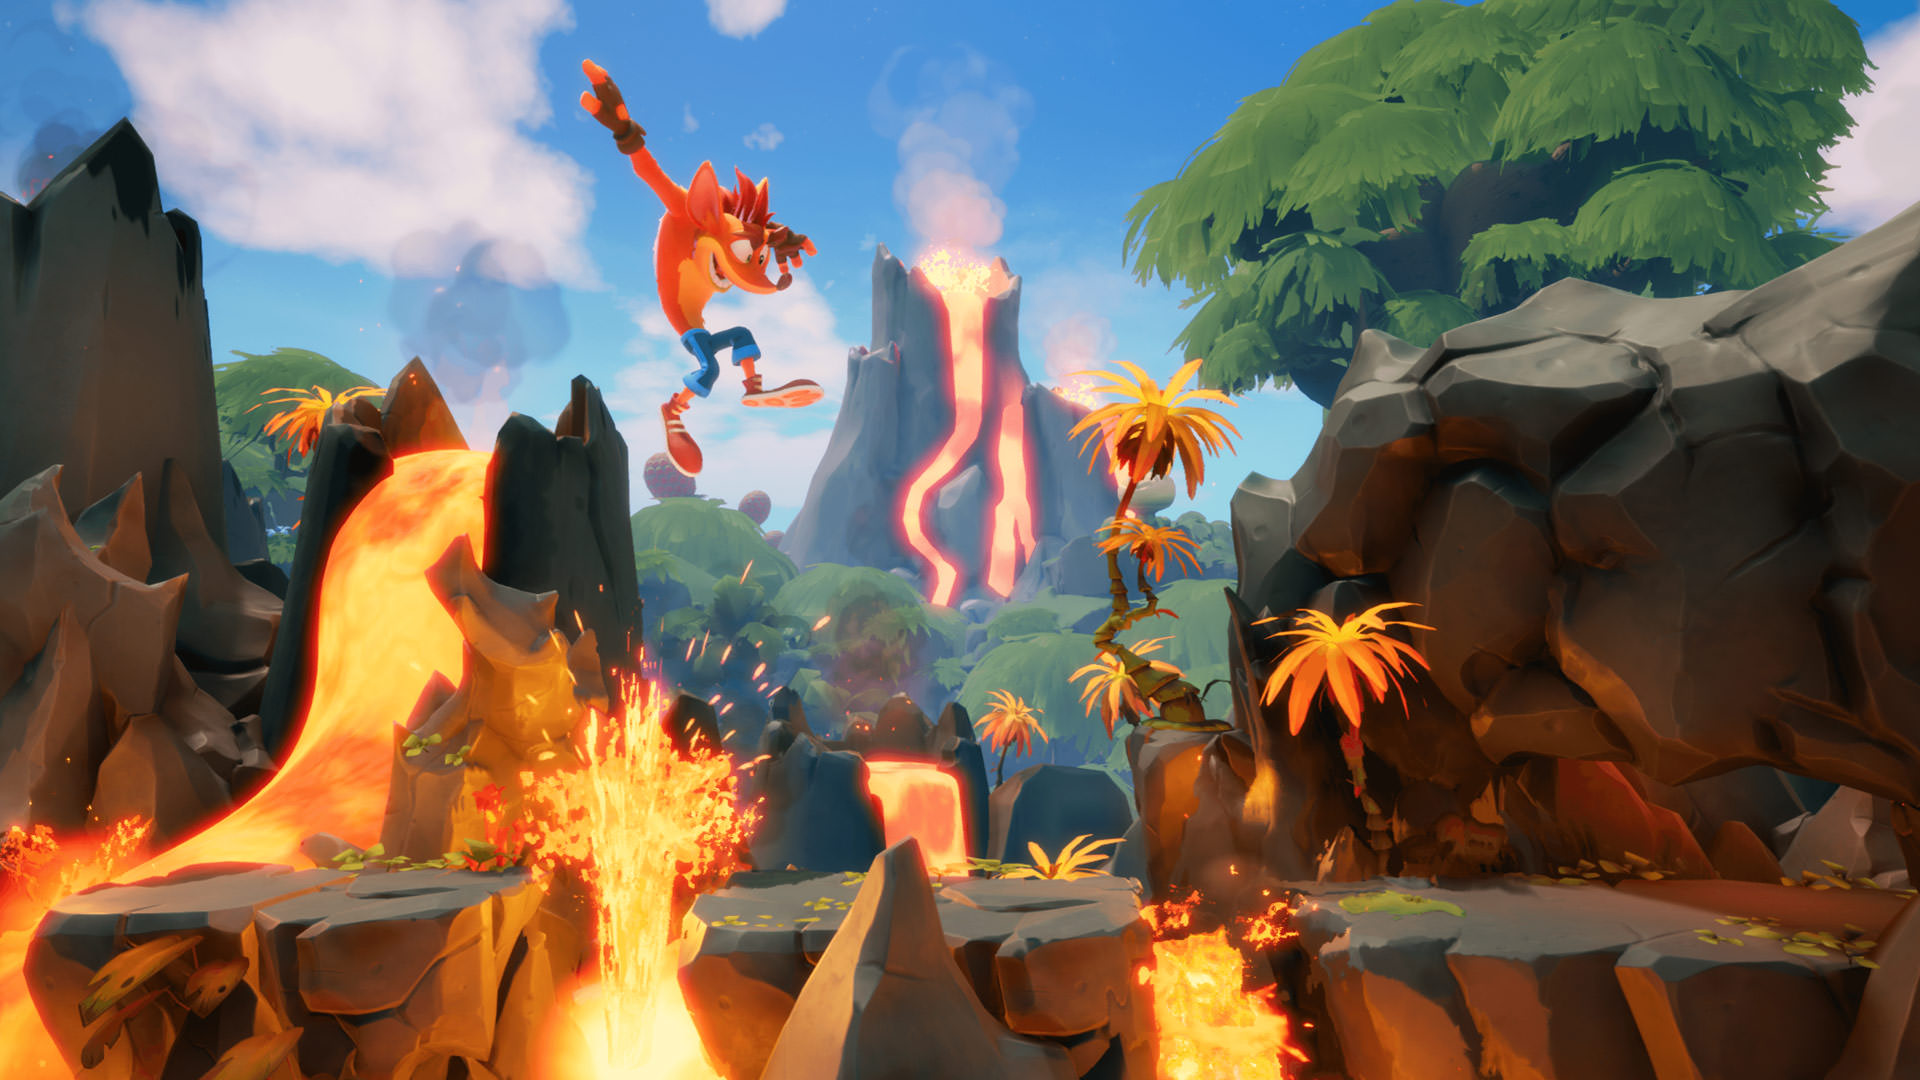 کرش بندیکوت در حال دب زدن میان آتش نشان در بازی Crash Bandicoot 4: It